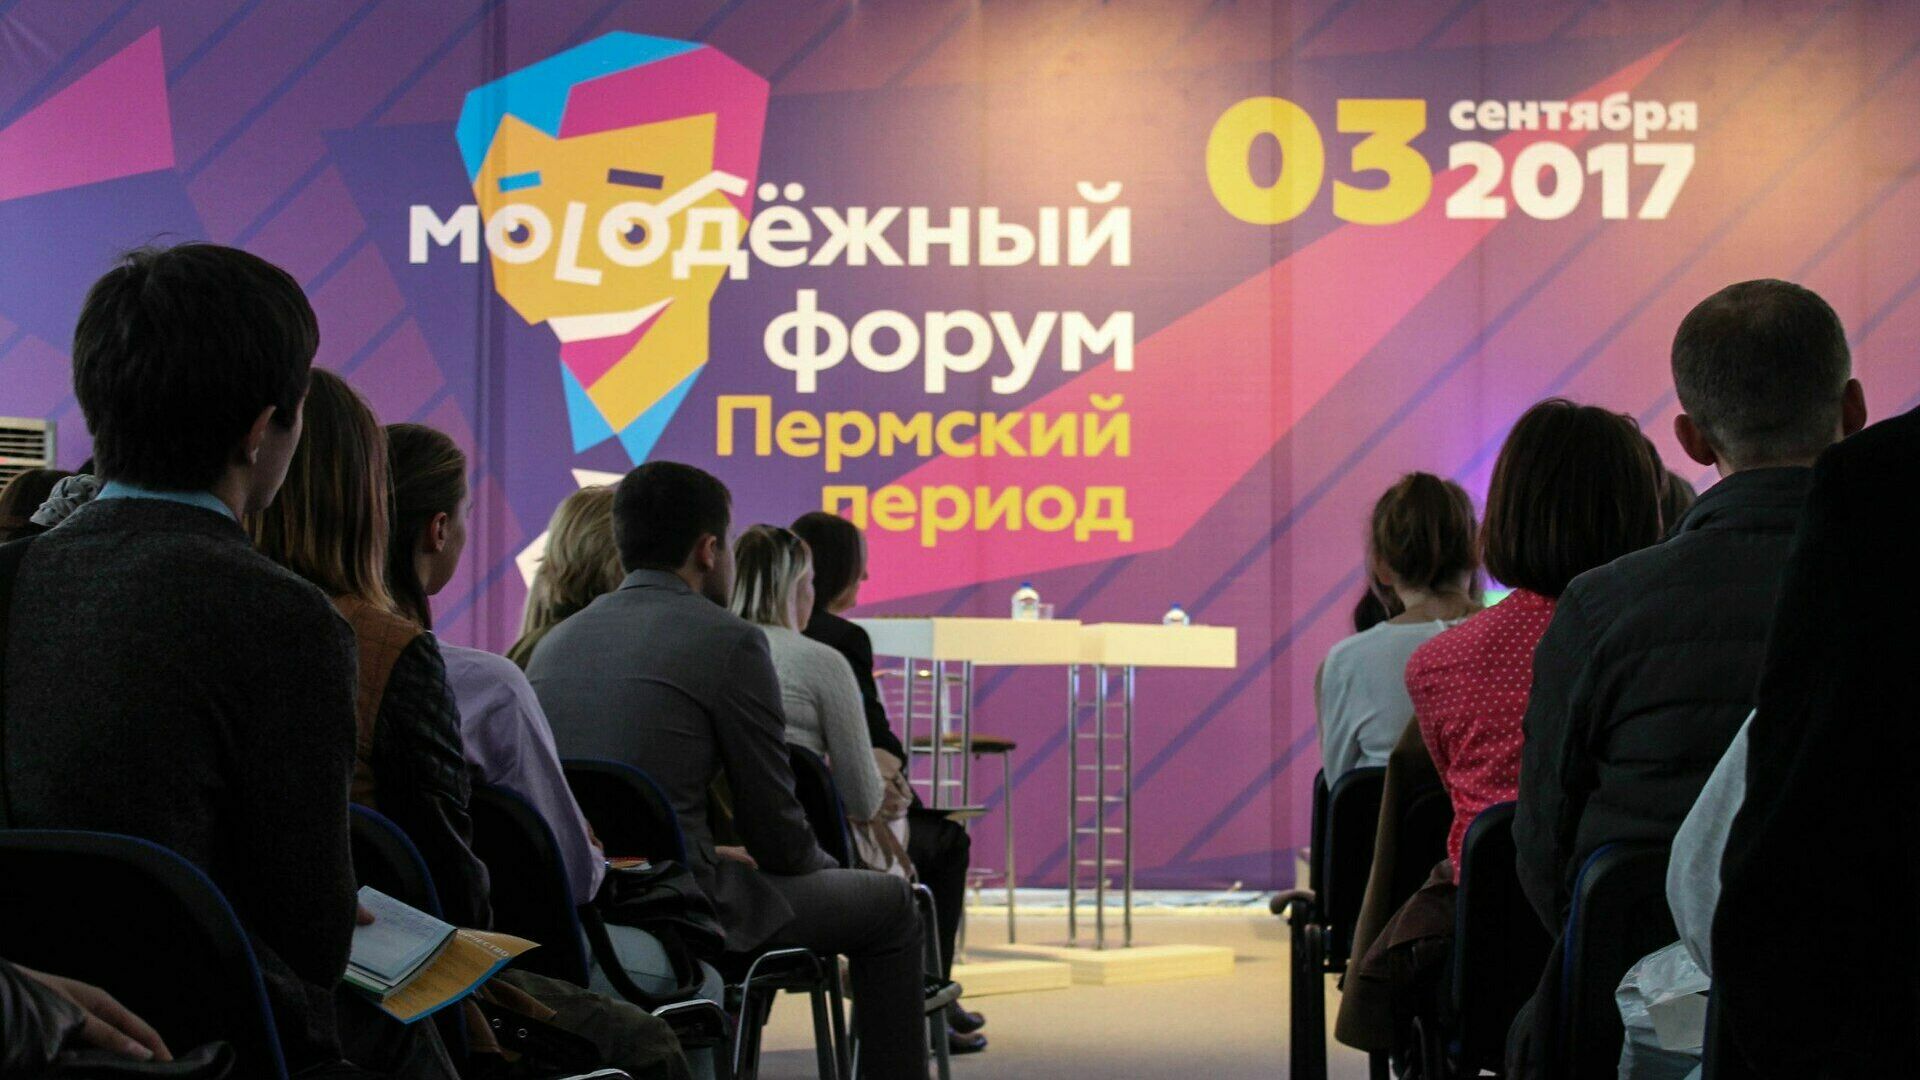 Следующий «Молодежный форум. Пермский период» пройдет в первые выходные сентября 2018 года